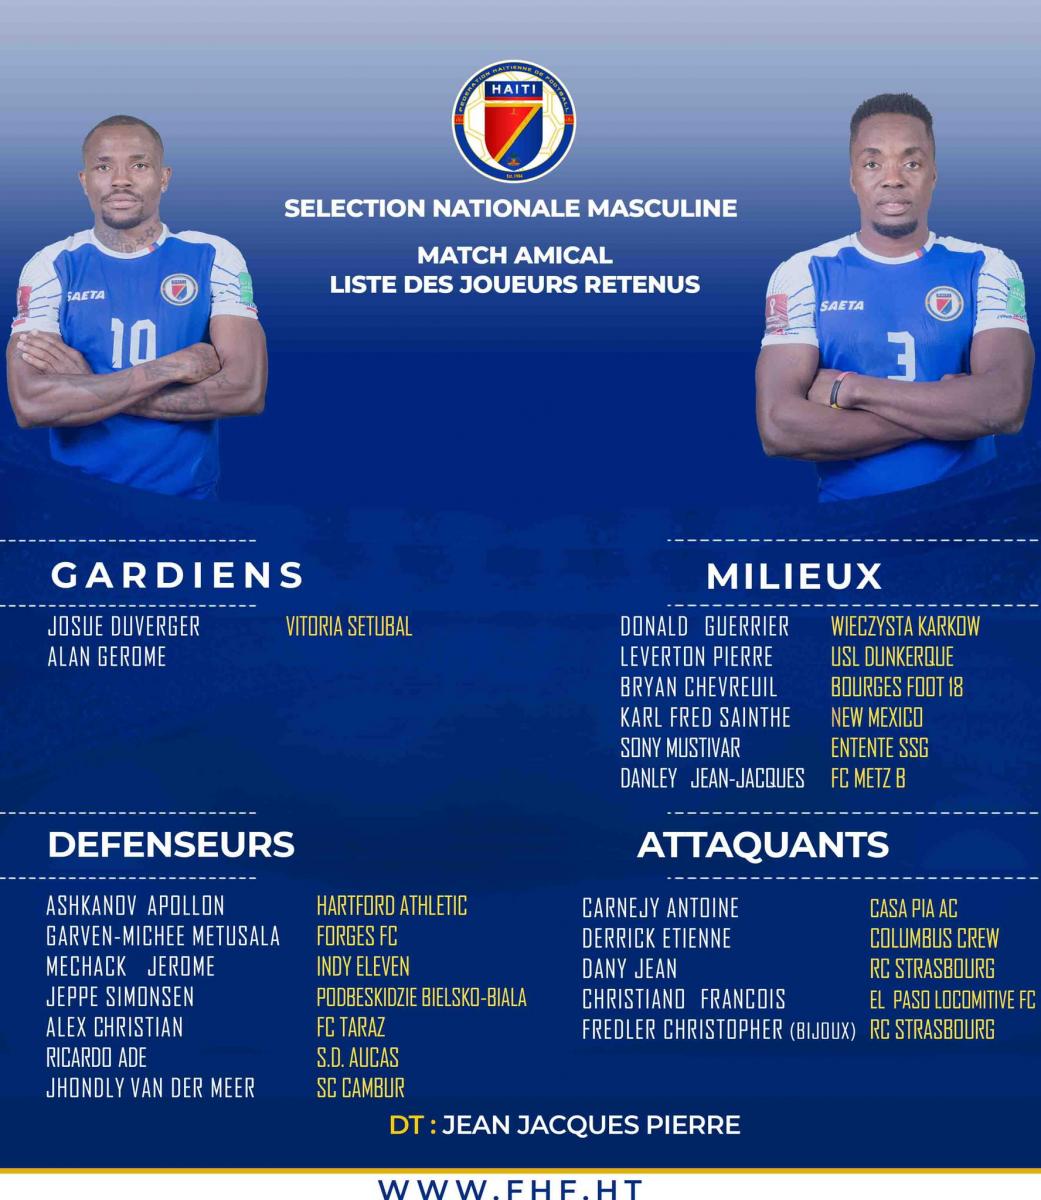 Source: Fédération Haïtienne de Footbal